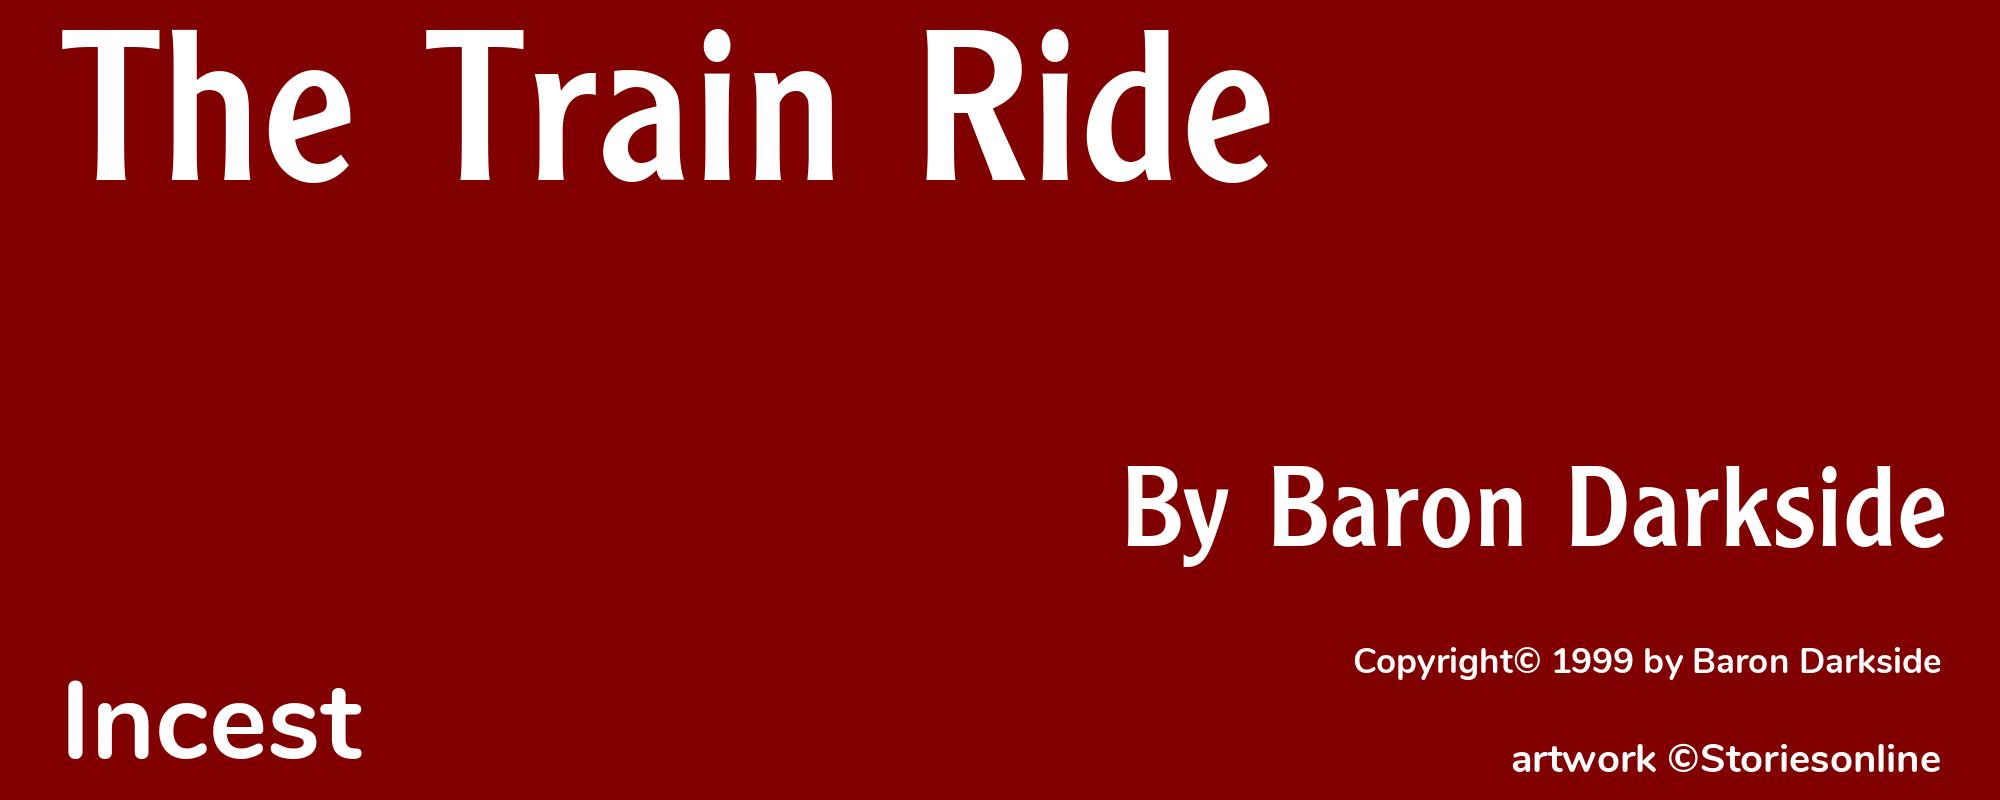 The Train Ride - Cover